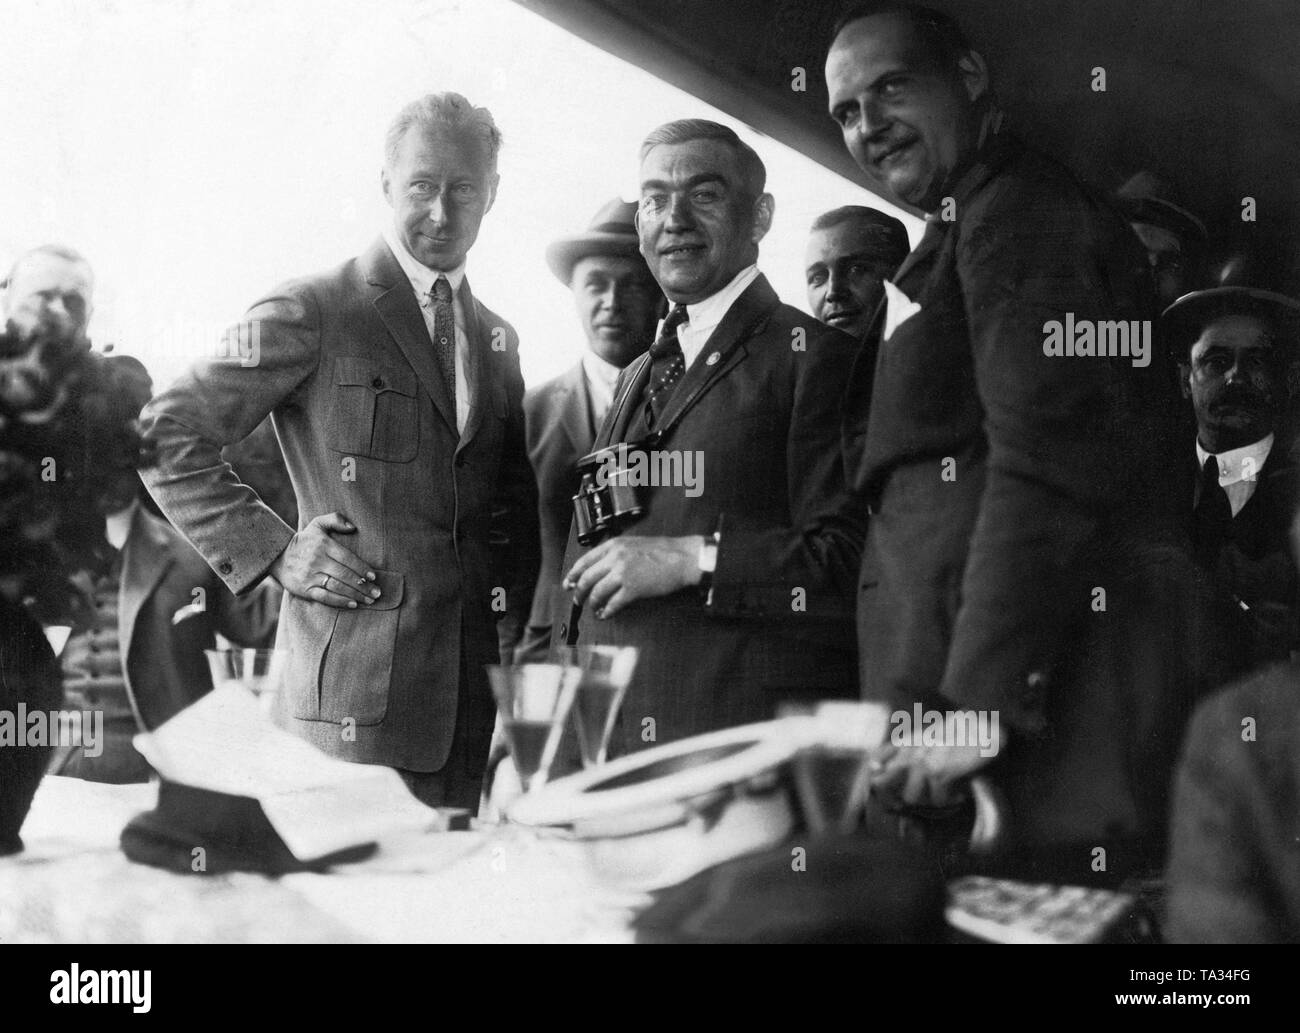 L'ancien prince héritier allemand (à gauche) dans le cercle de ses connaissances. La photo a probablement été prise lors d'un événement sportif. Banque D'Images